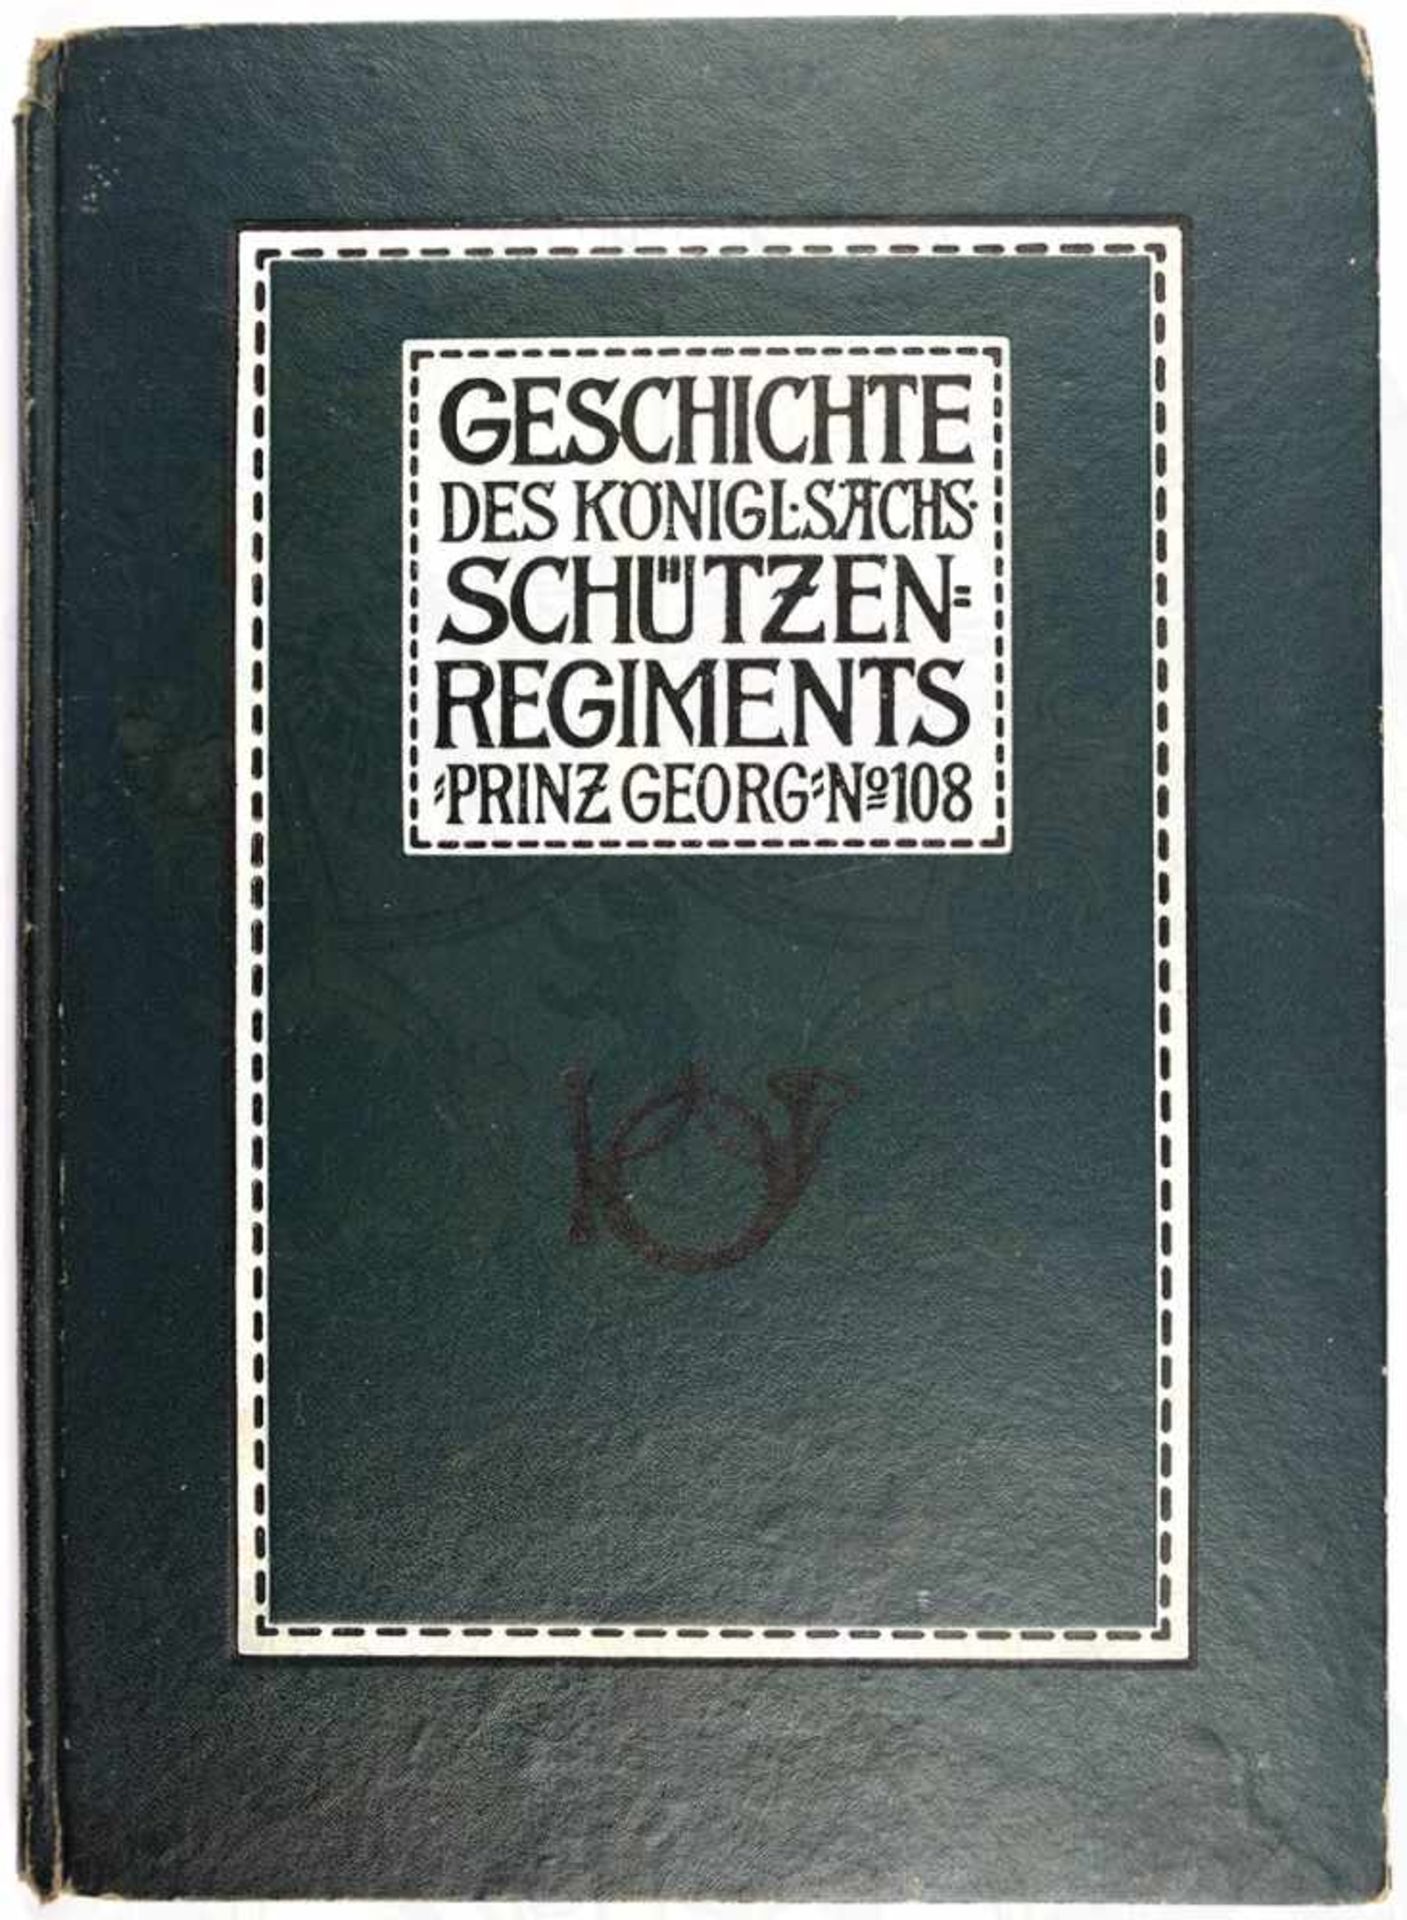 KÖNIGL.-SÄCHS. SCHÜTZENREGIMENT PRINZ GEORG NR. 108, Verlag C. Jacobsen, Leipzig 1909, 197 S.,